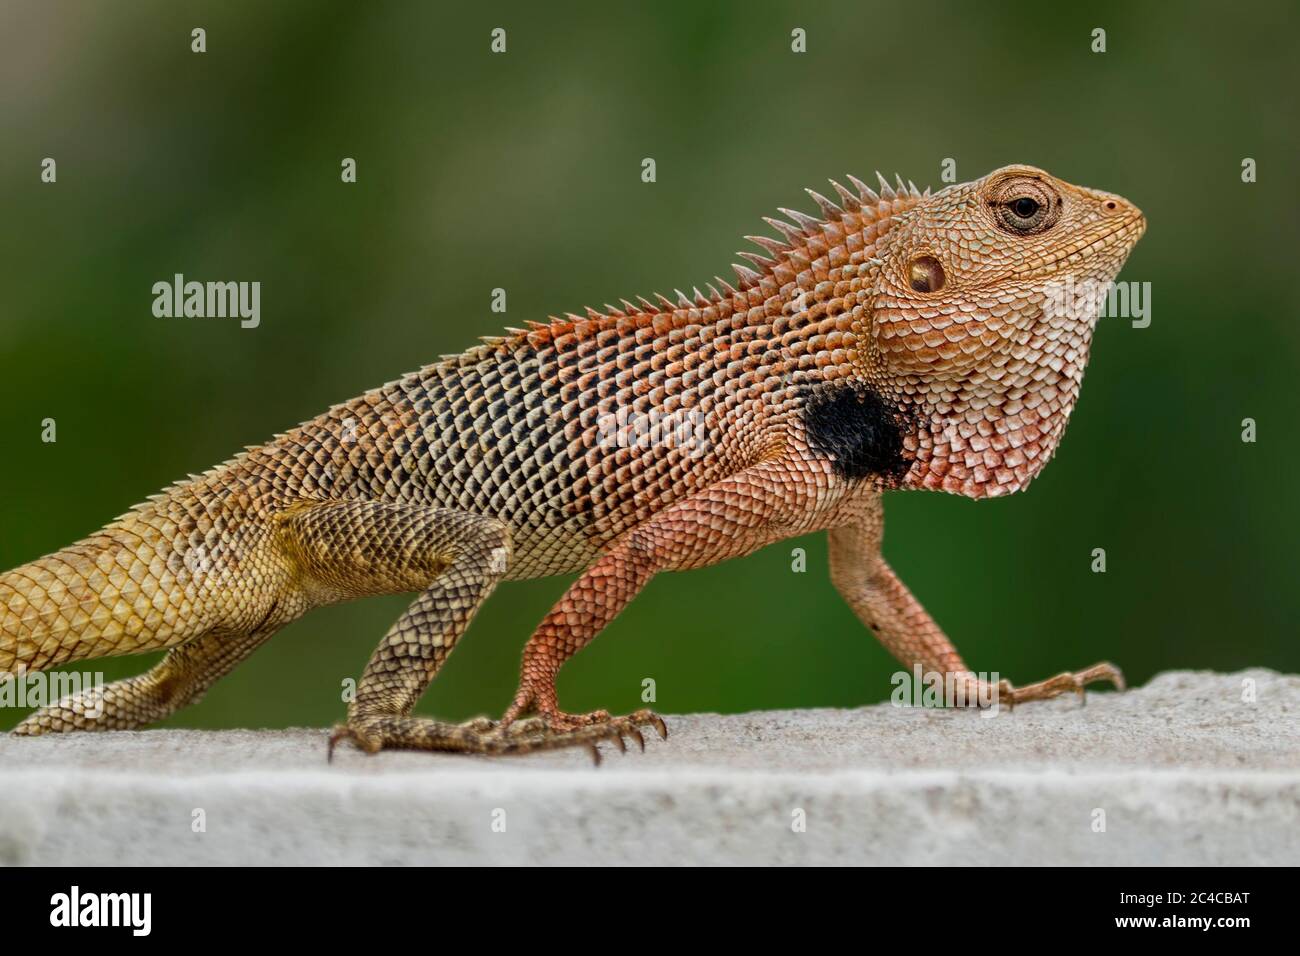 Oriental garden lizard, eastern garden lizard or changeable lizard (Calotes versicolor). Stock Photo